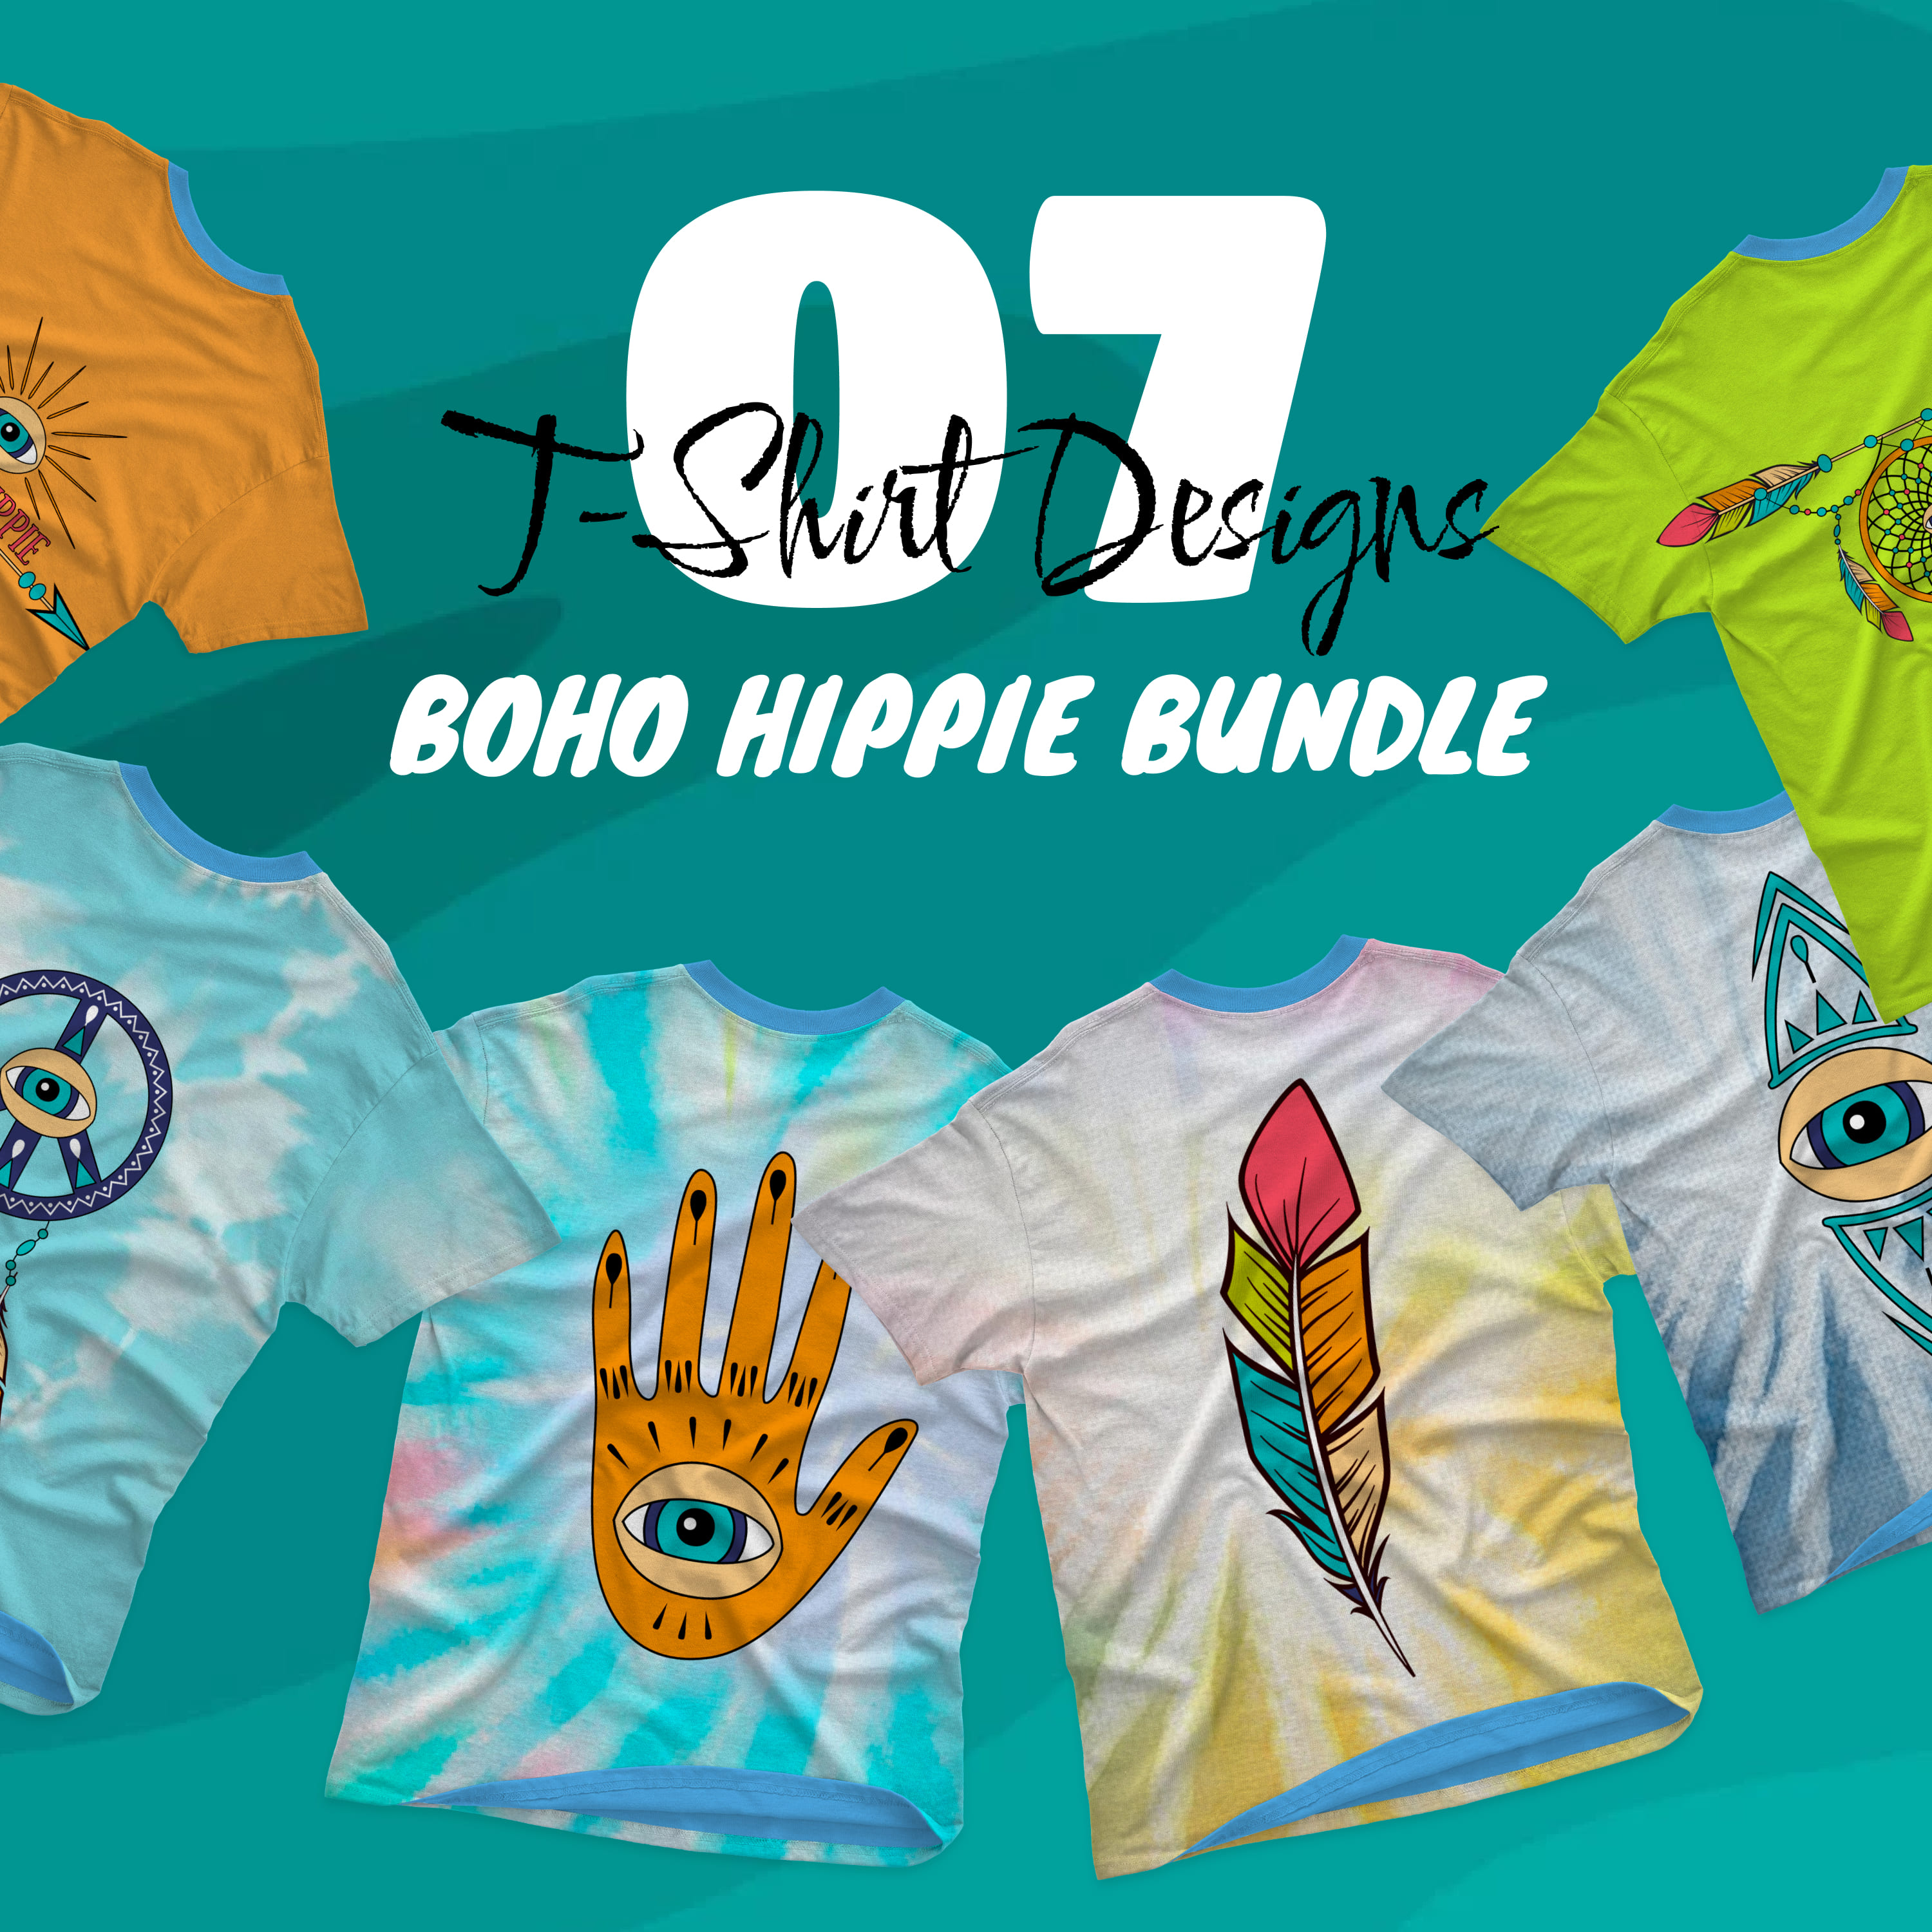 Boho Hippie SVG T-shirt Designs Bundle - main image preview.